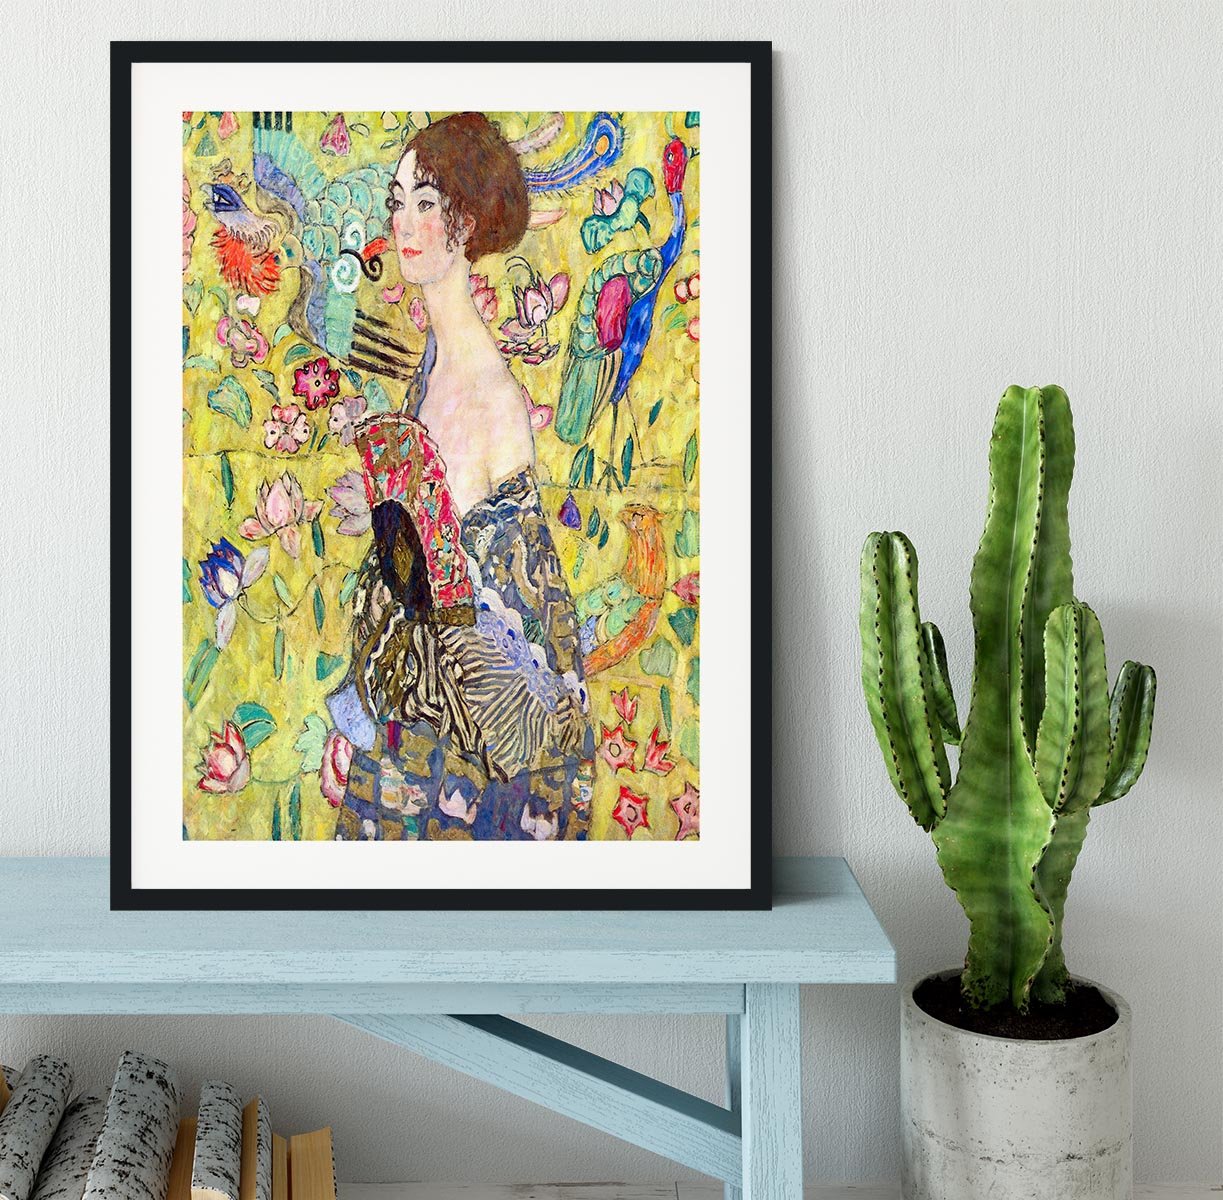 Lady with fan by Klimt Framed Print - Canvas Art Rocks - 1